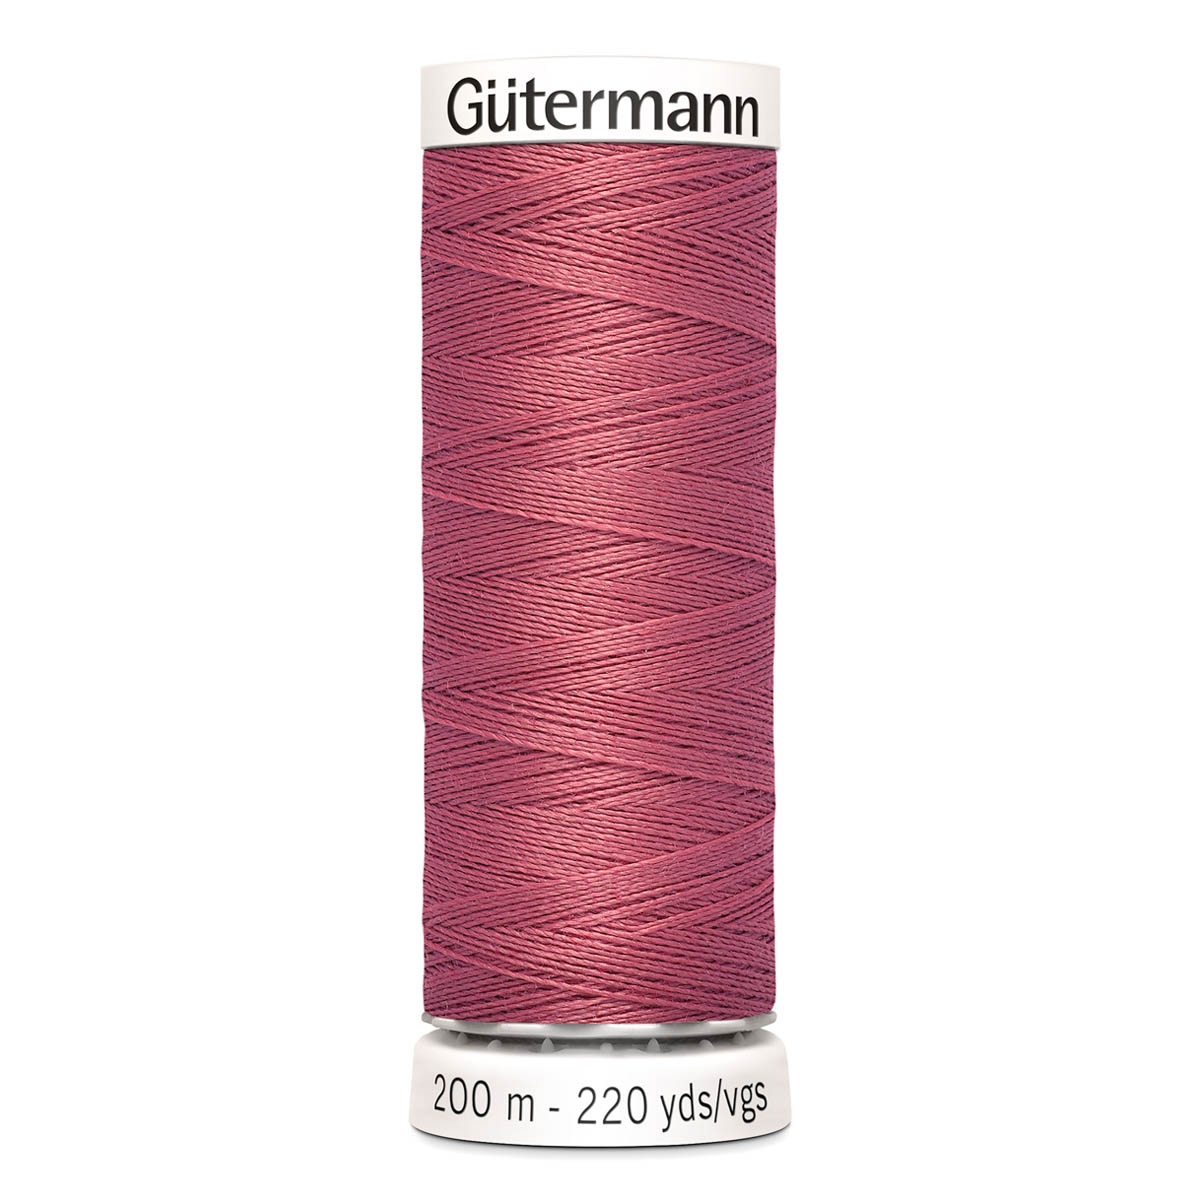 

Нить Gutermann Sew-all для всех материалов, 748277, 200 м (081 клевер), 5 шт, Разноцветный, 132057